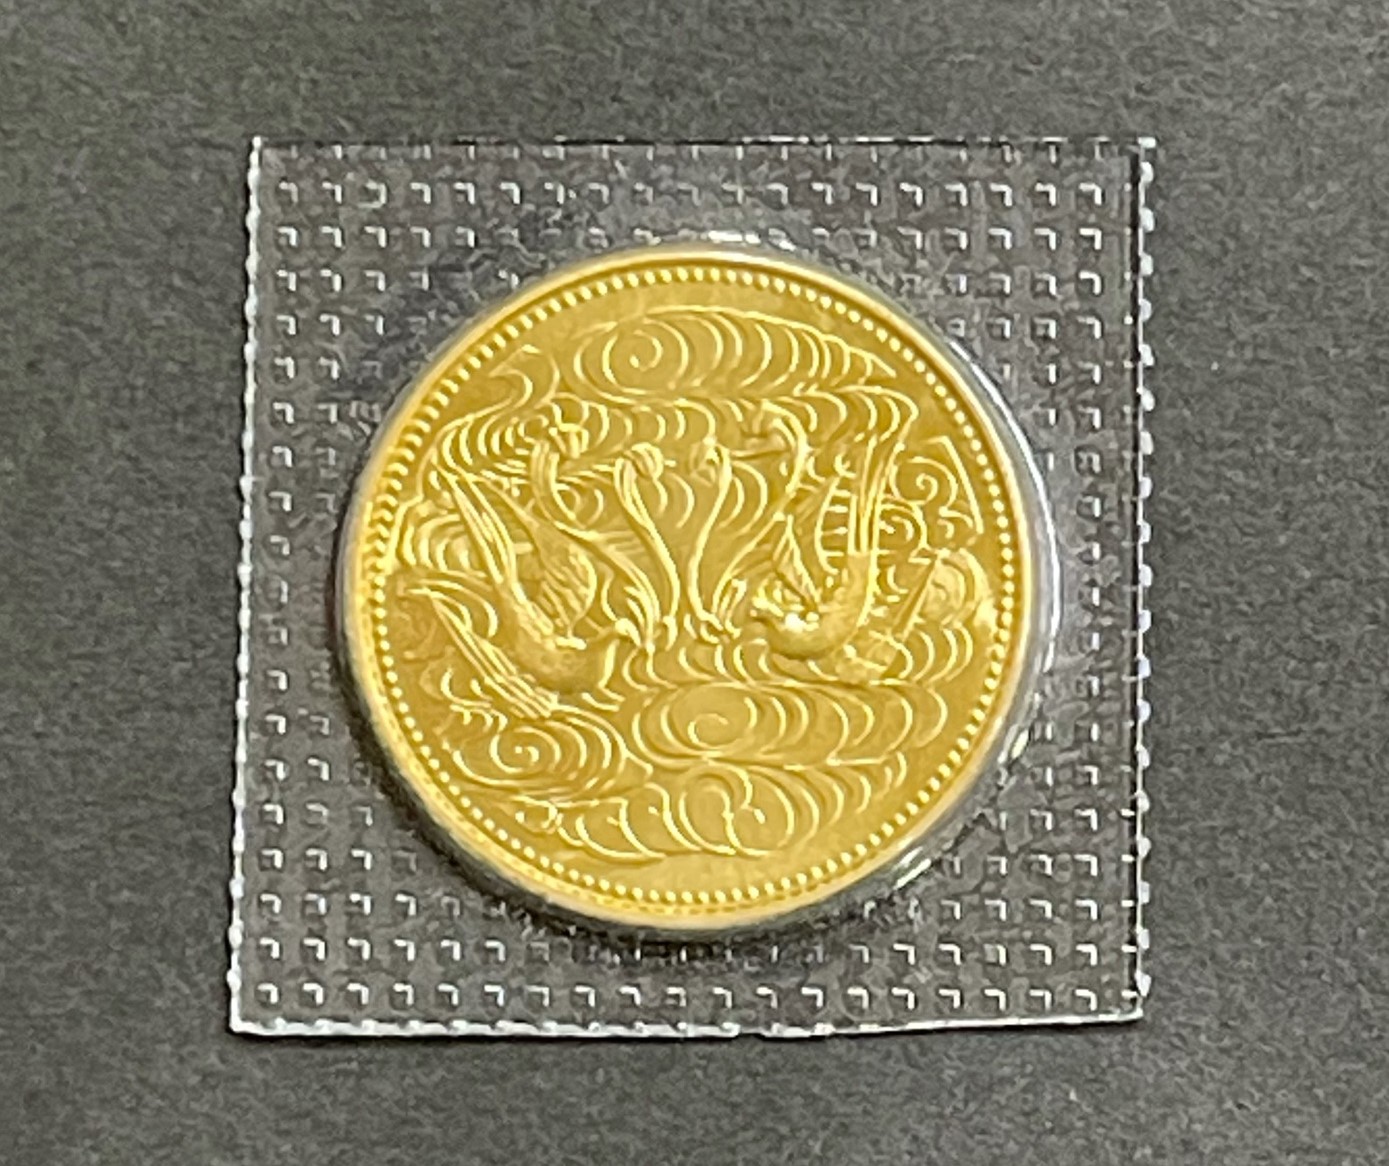 天皇陛下御在位60年記念 記念金貨 10万円 拾万円 金貨 記念硬貨 - 旧 